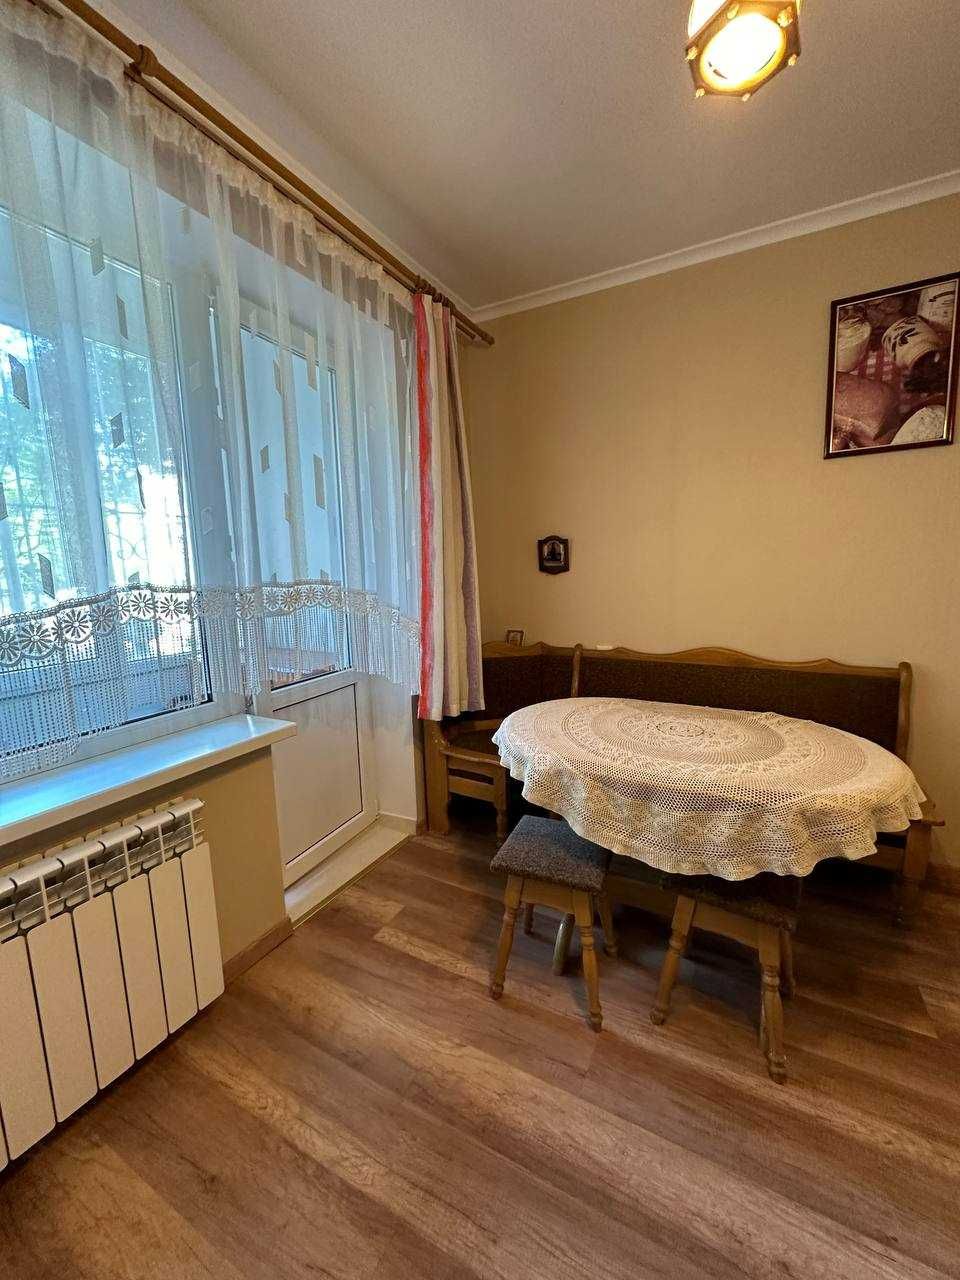 Оренда 2 кімнатної квартири по вулиці Антоненка-Давидовича СИХІВ